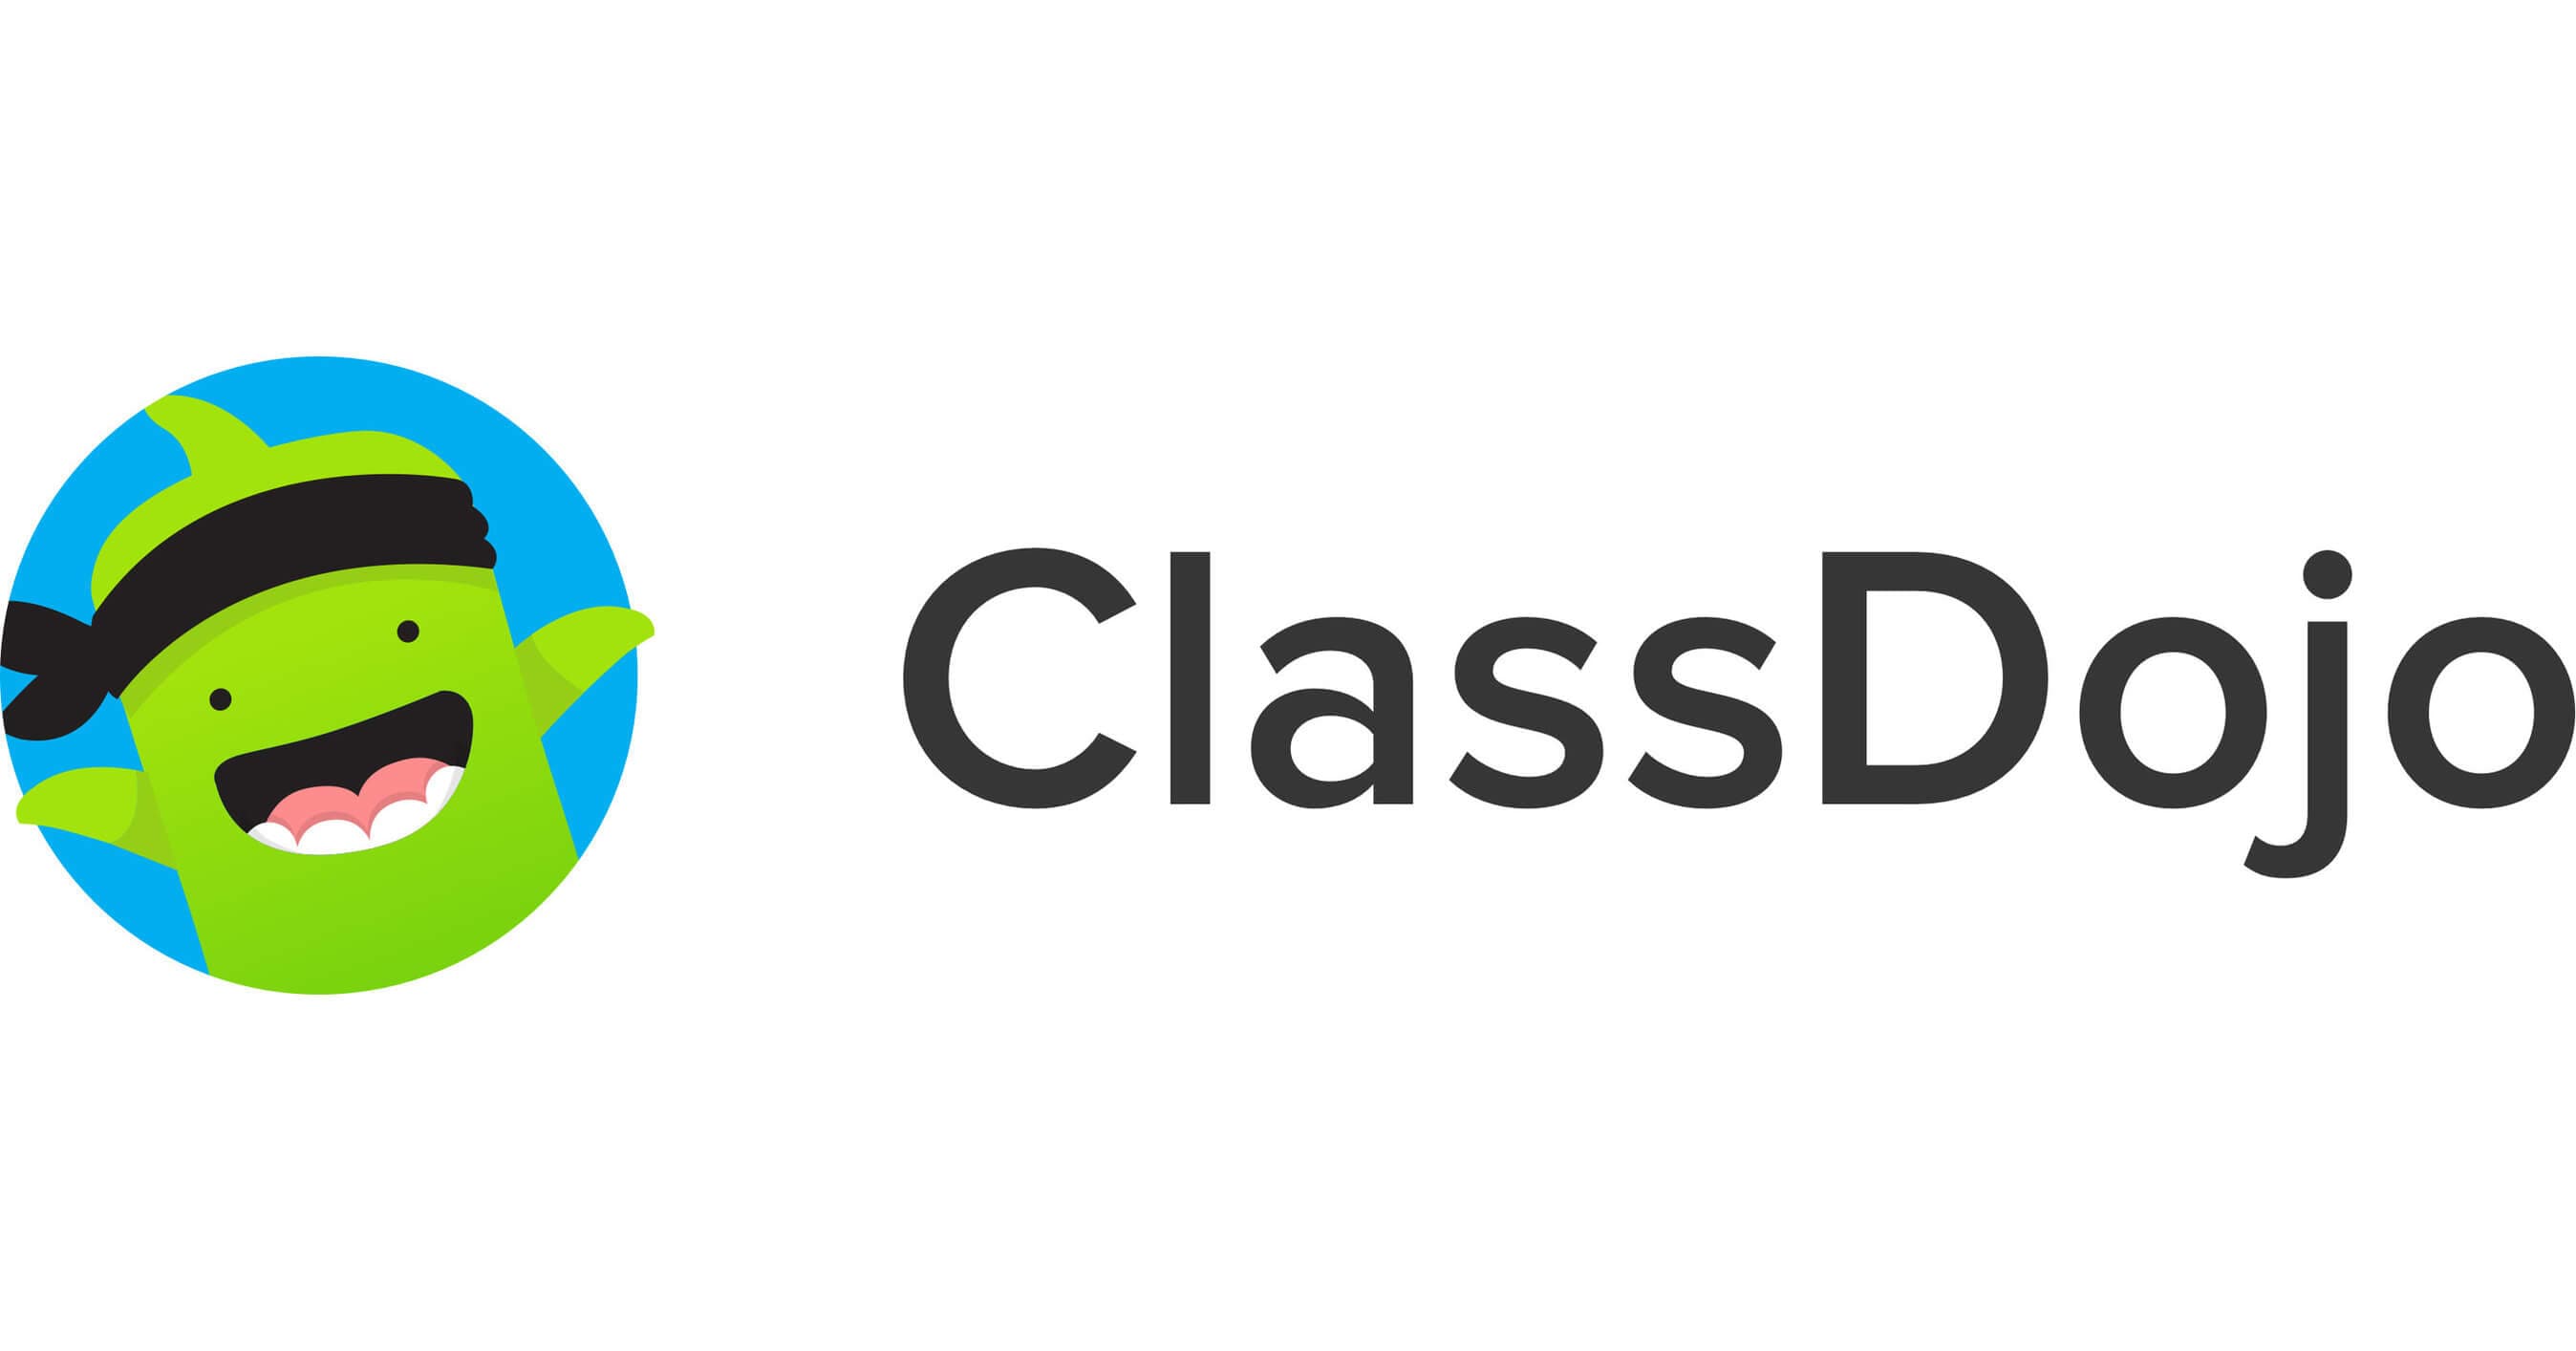 Classdojo app